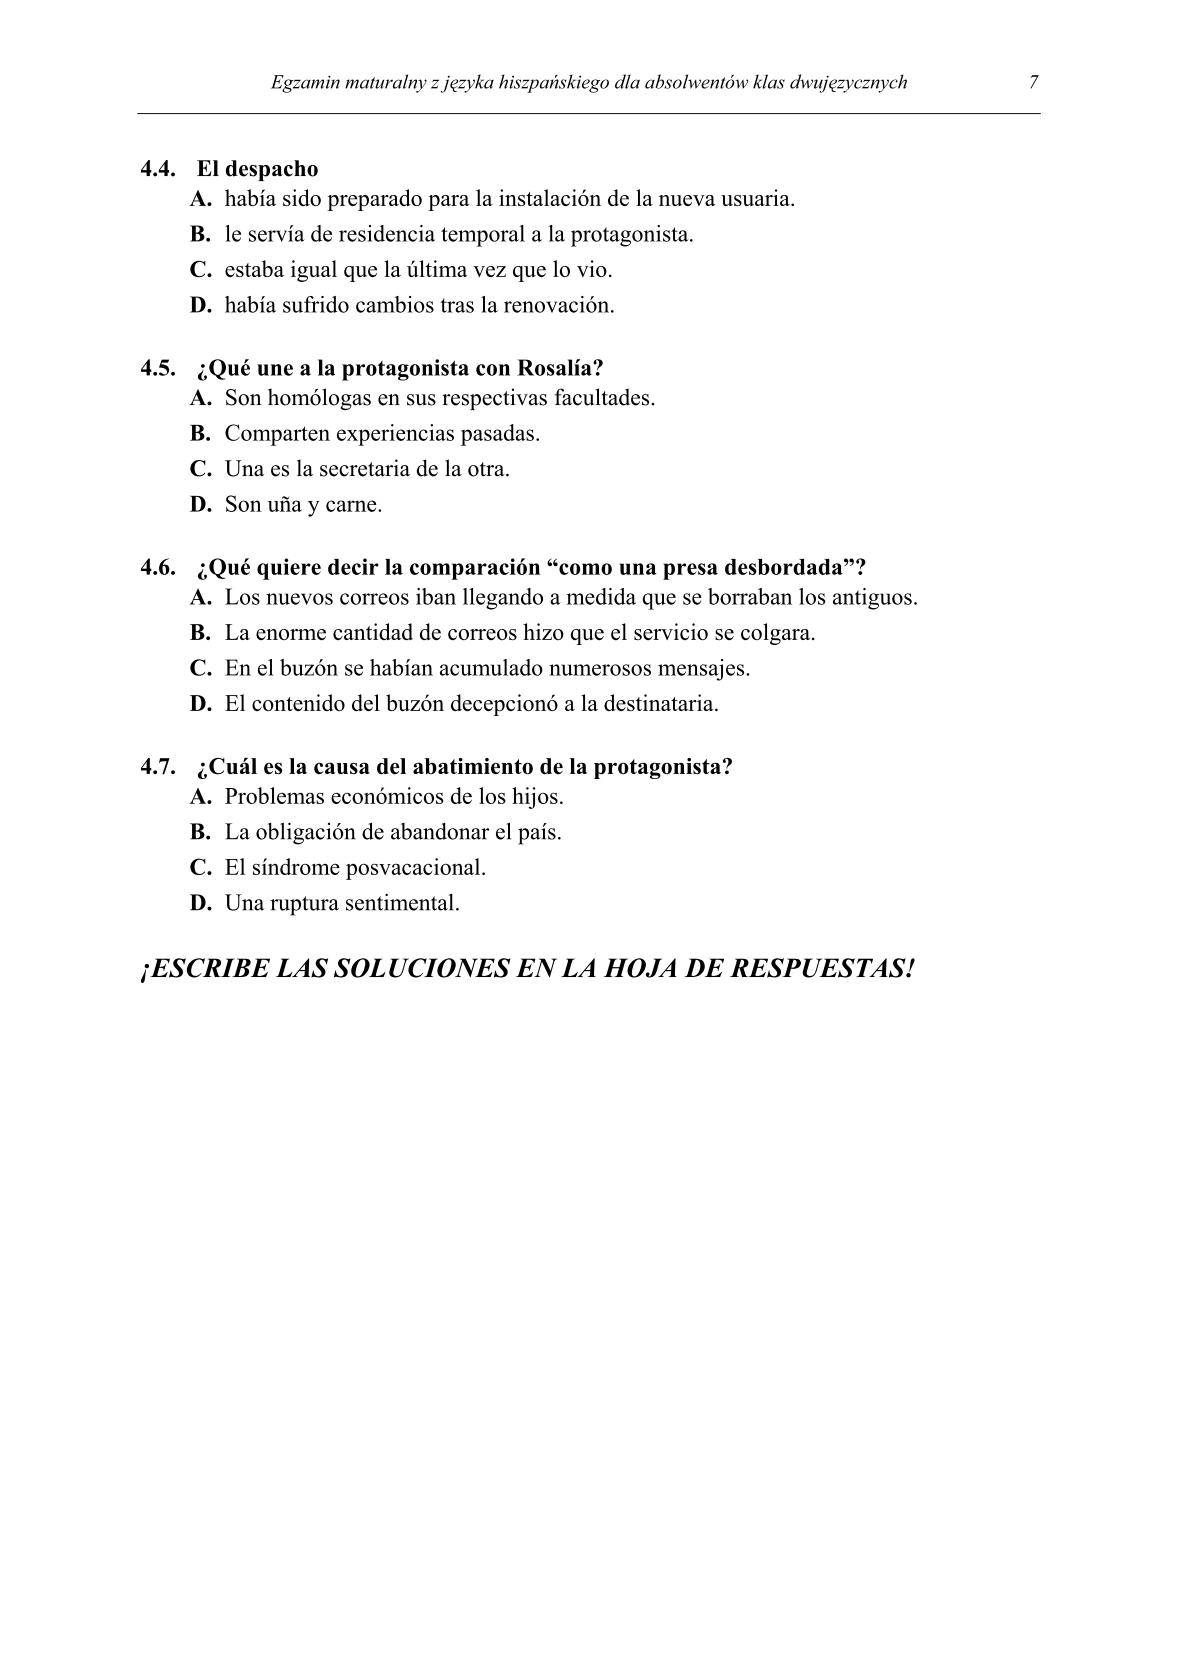 pytania-hiszpanski-dla-absolwentow-klas-dwujezycznych-matura-2014-str.7